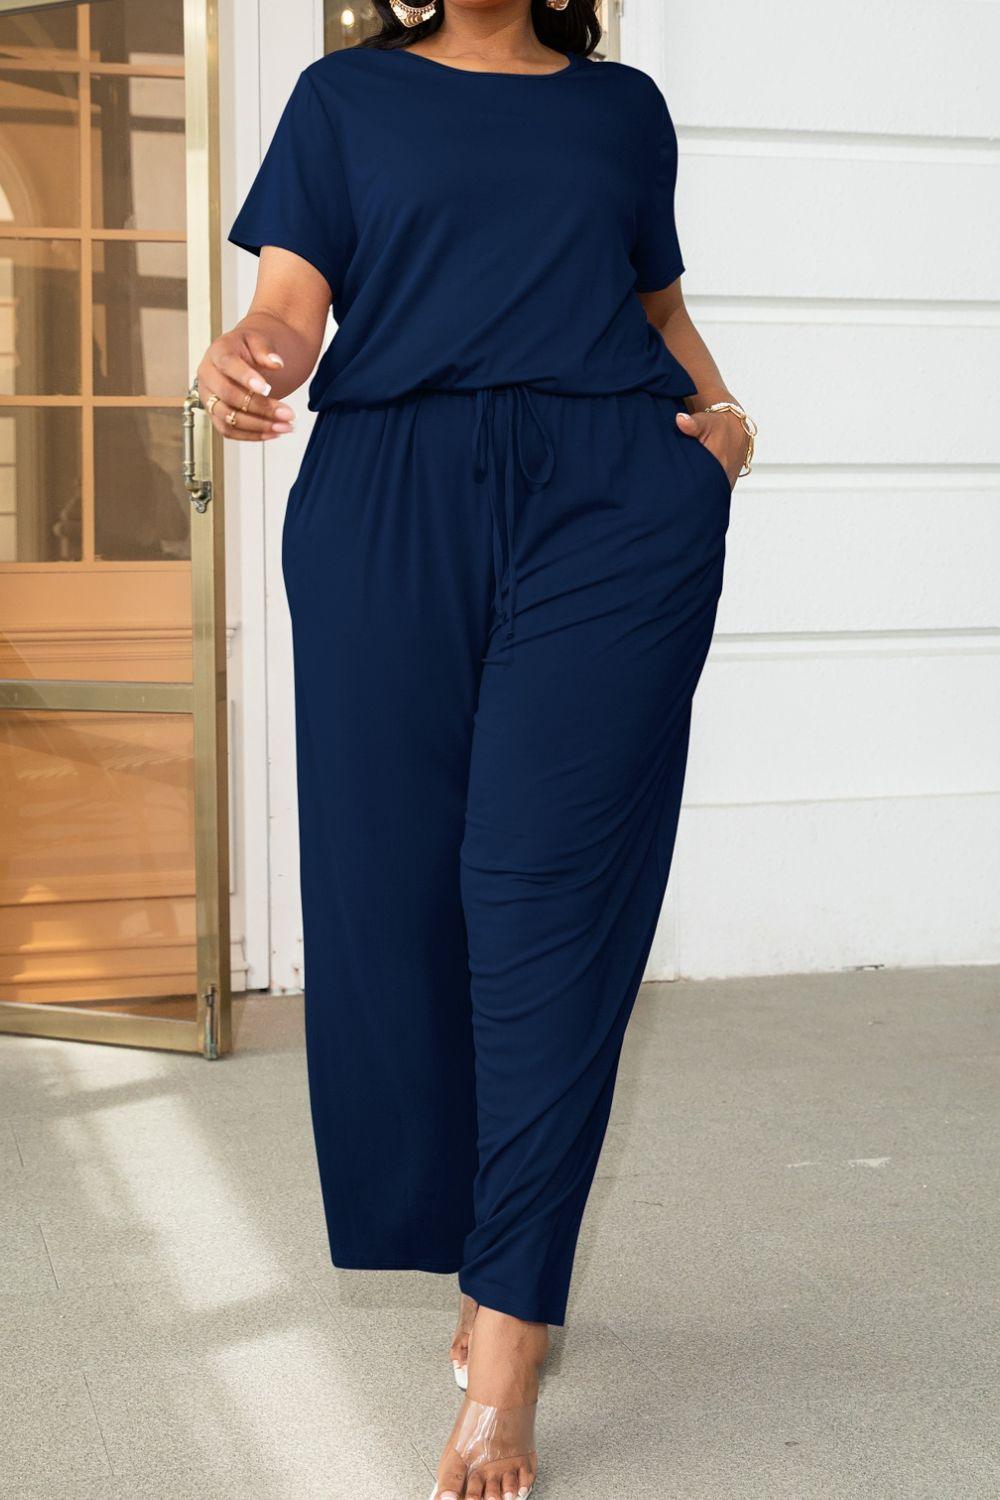 Plus Size Drawstring Waist Short Sleeve Jumpsuit - Lucianne Boutique